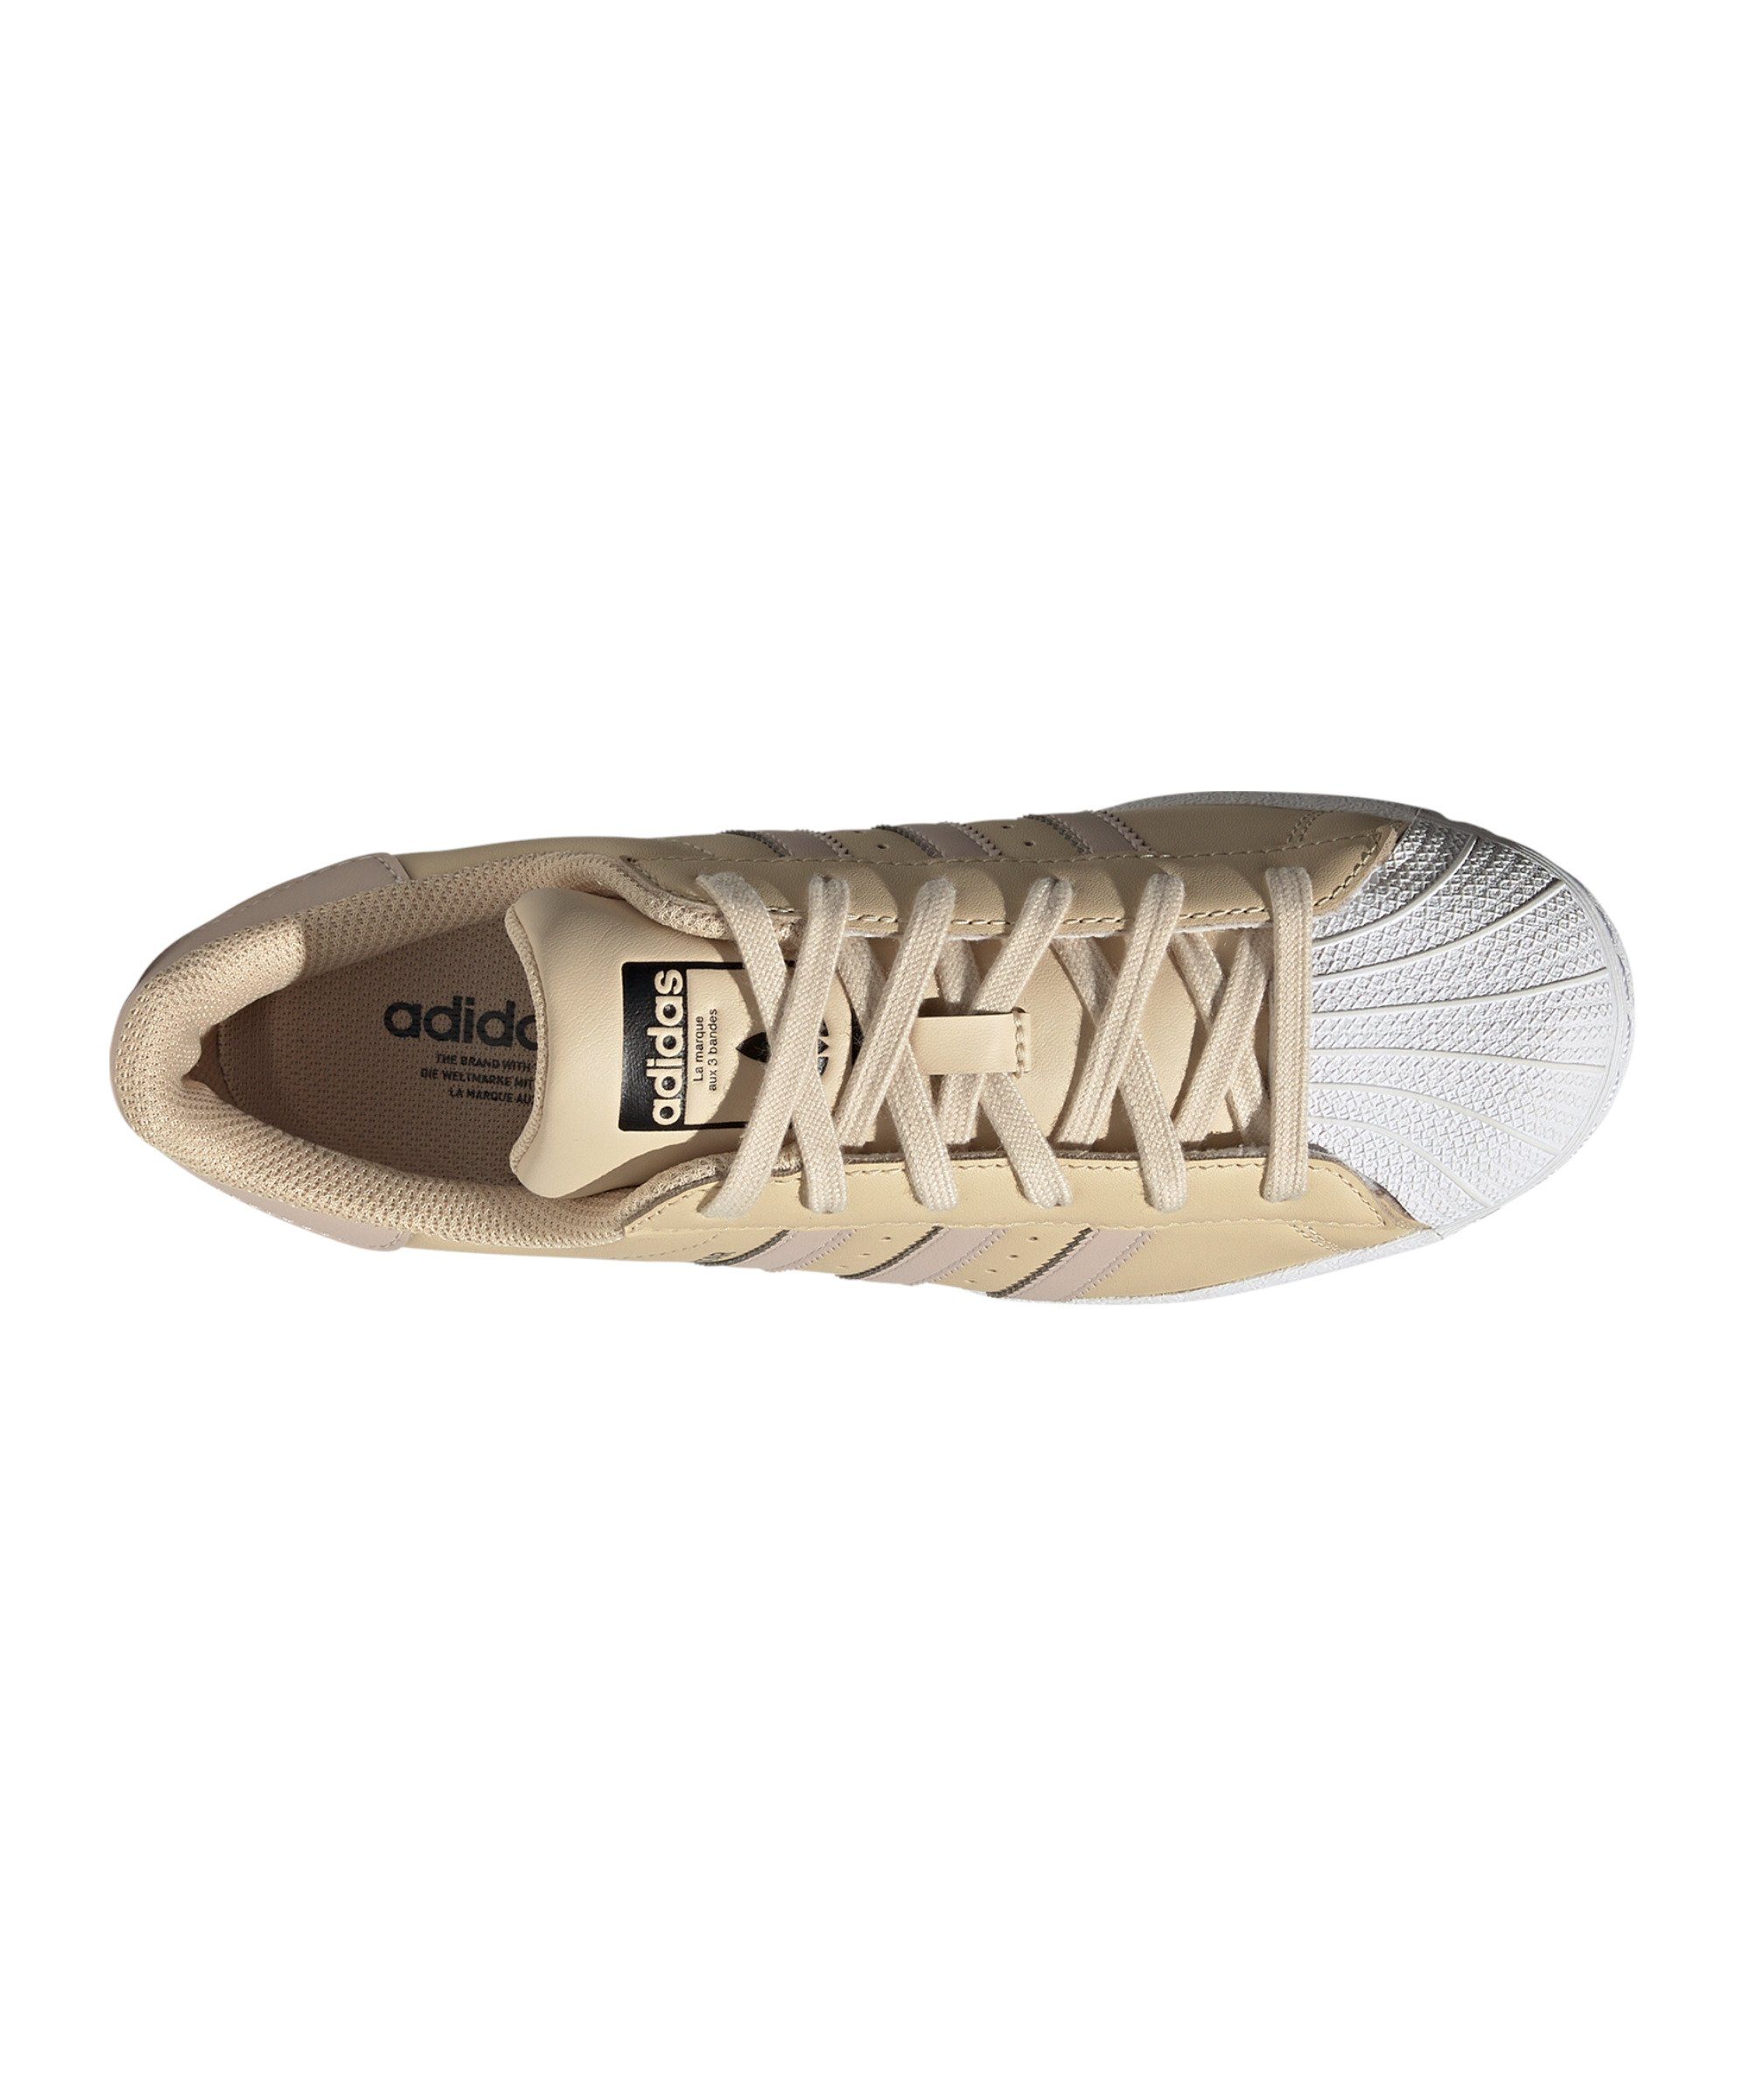 adidas Originals Superstar Damen Sneaker gelbbraunschwarz